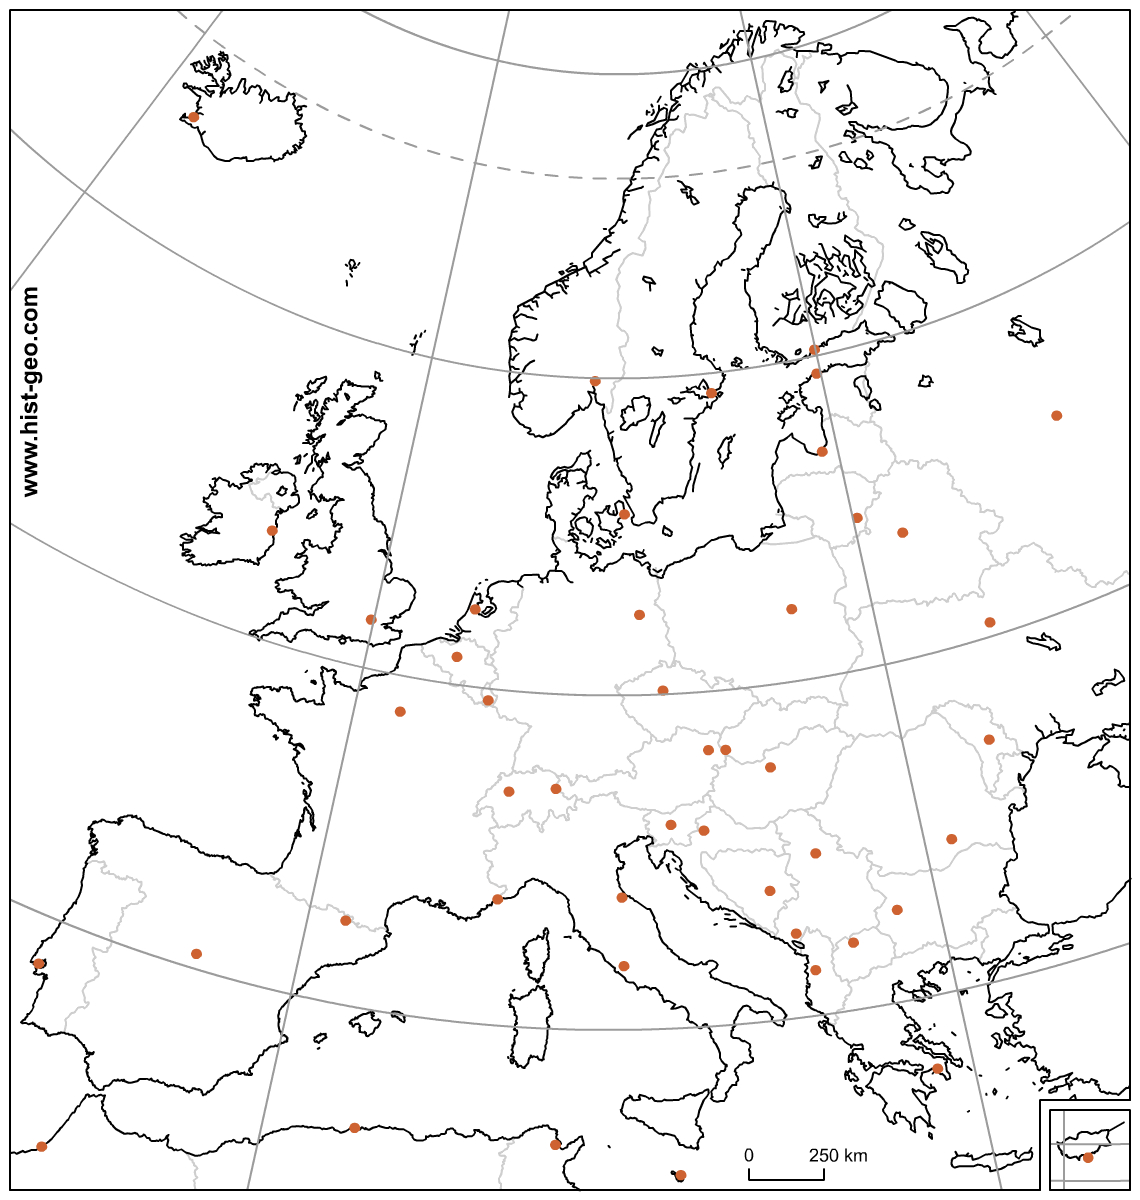 Carte Muette Des Pays Et Capitales D'europe (Ue) Avec destiné Carte Europe Capitale